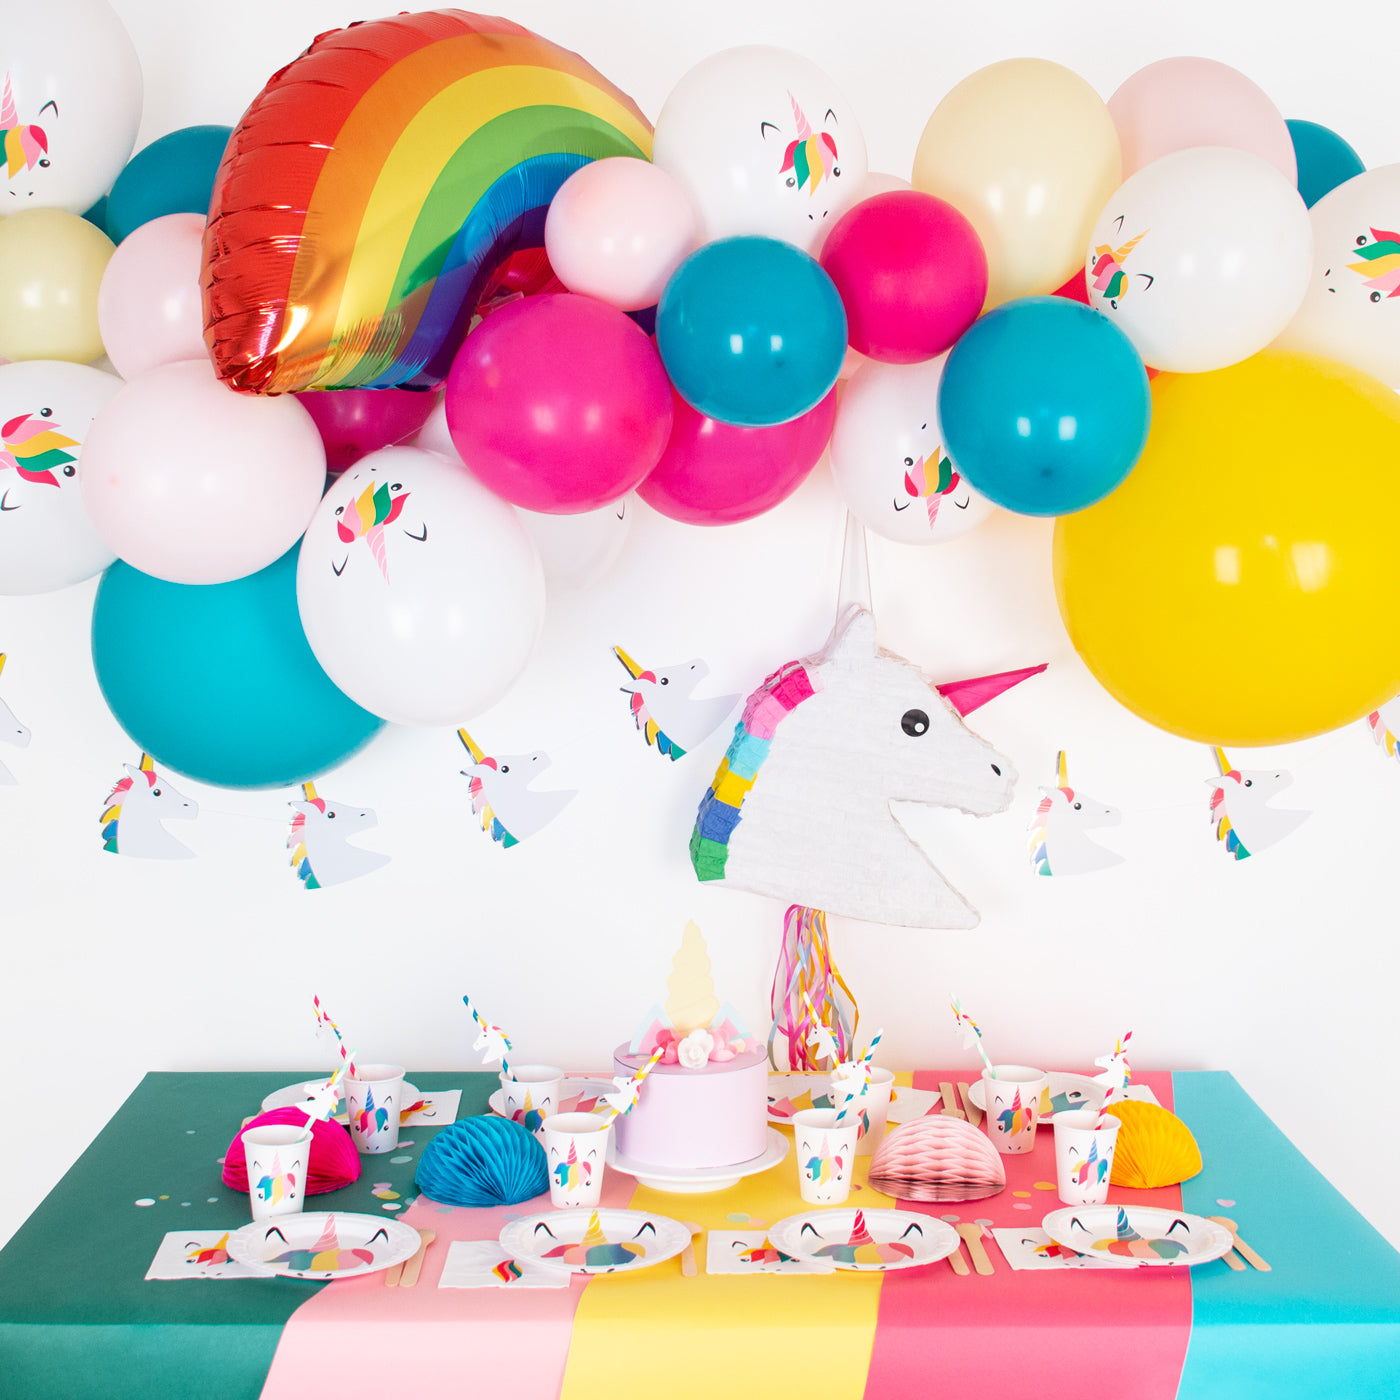 Les 20 meilleures idées pour un anniversaire licorne